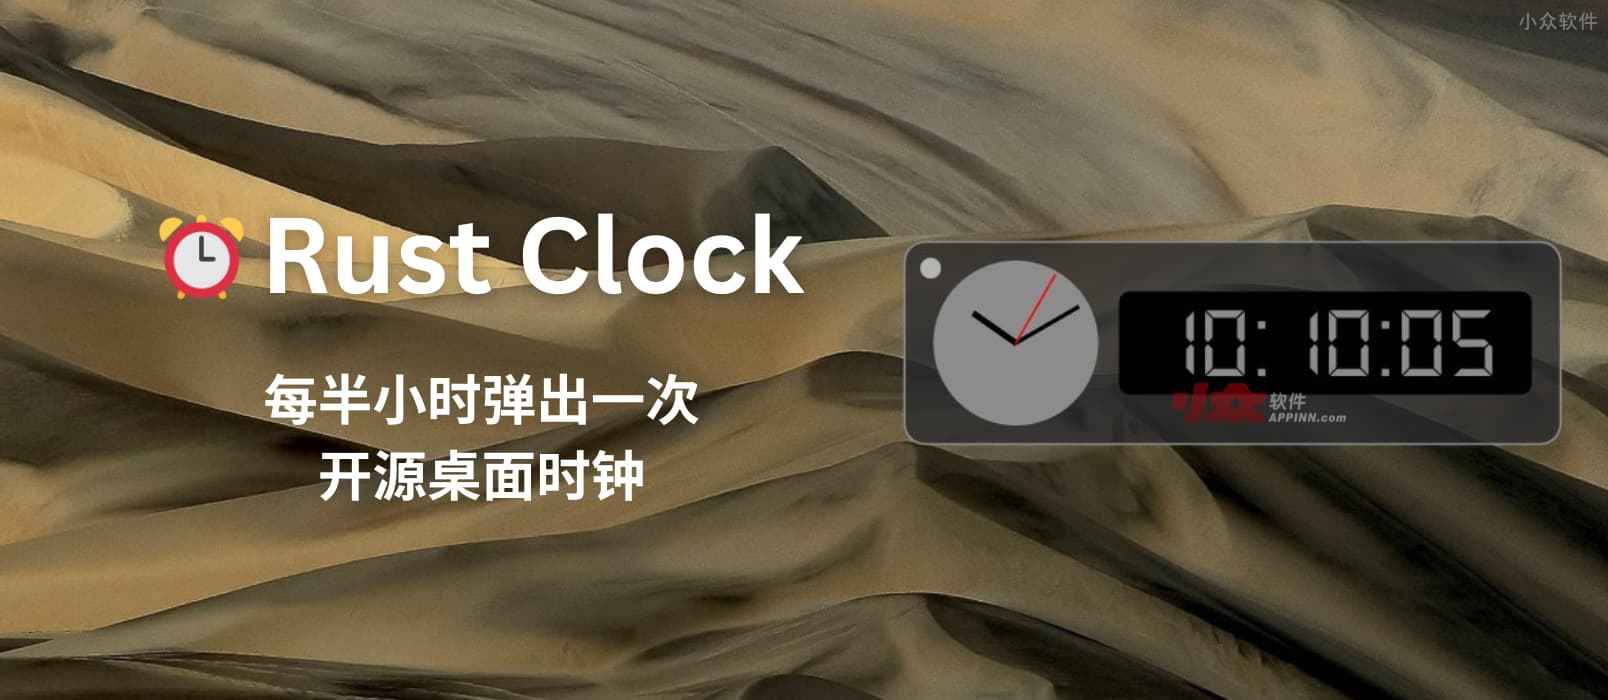 Rust Clock - 每半小时弹出一次的开源桌面时钟[Windows]